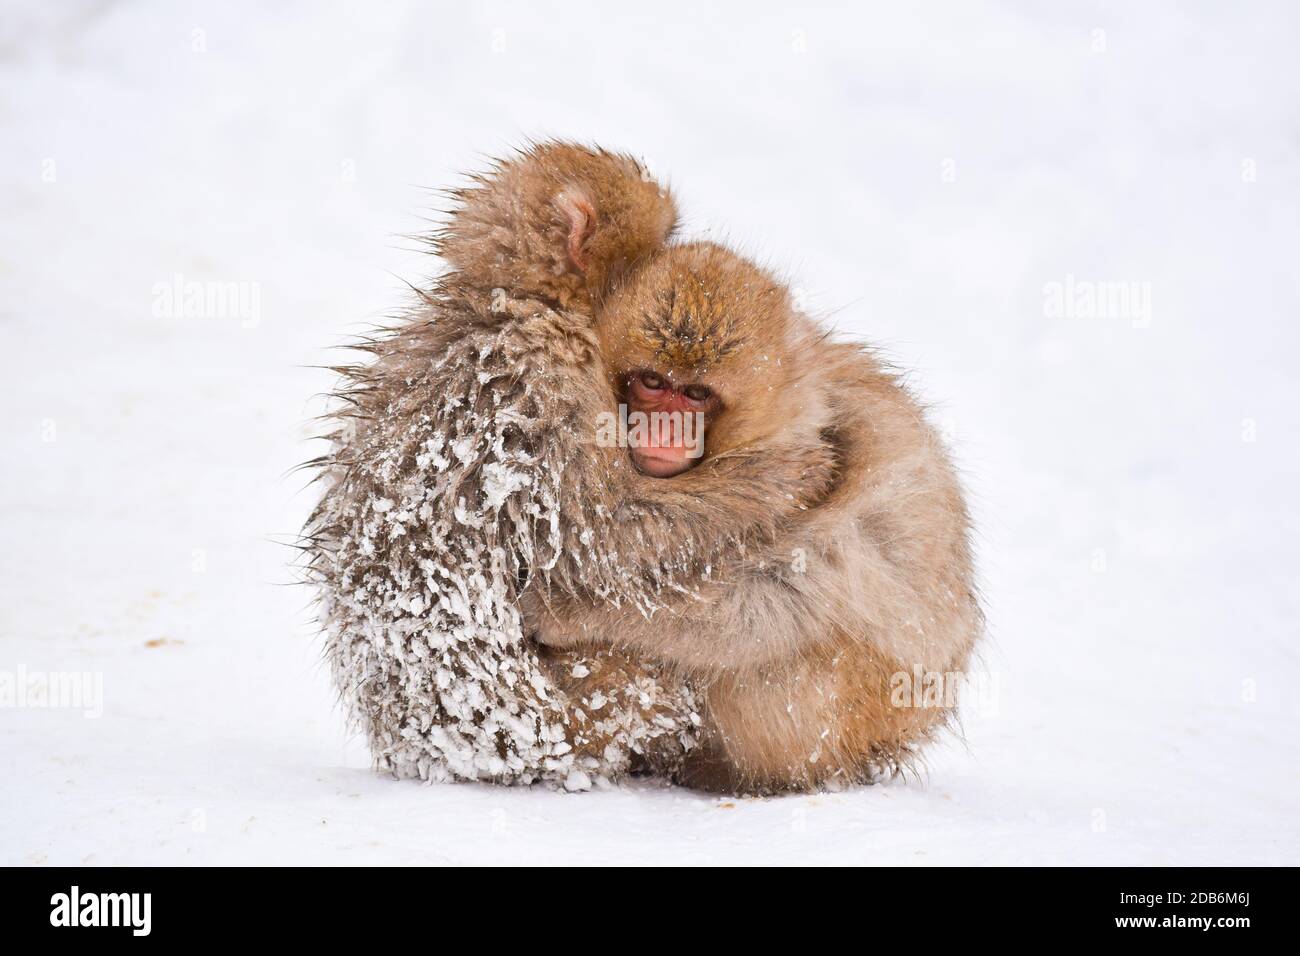 deux petits singes à neige bruns s'embrassant et se rangeant les uns les autres de la neige froide avec de la glace dans leur fourrure en hiver. Animaux sauvages montrant l'amour Banque D'Images